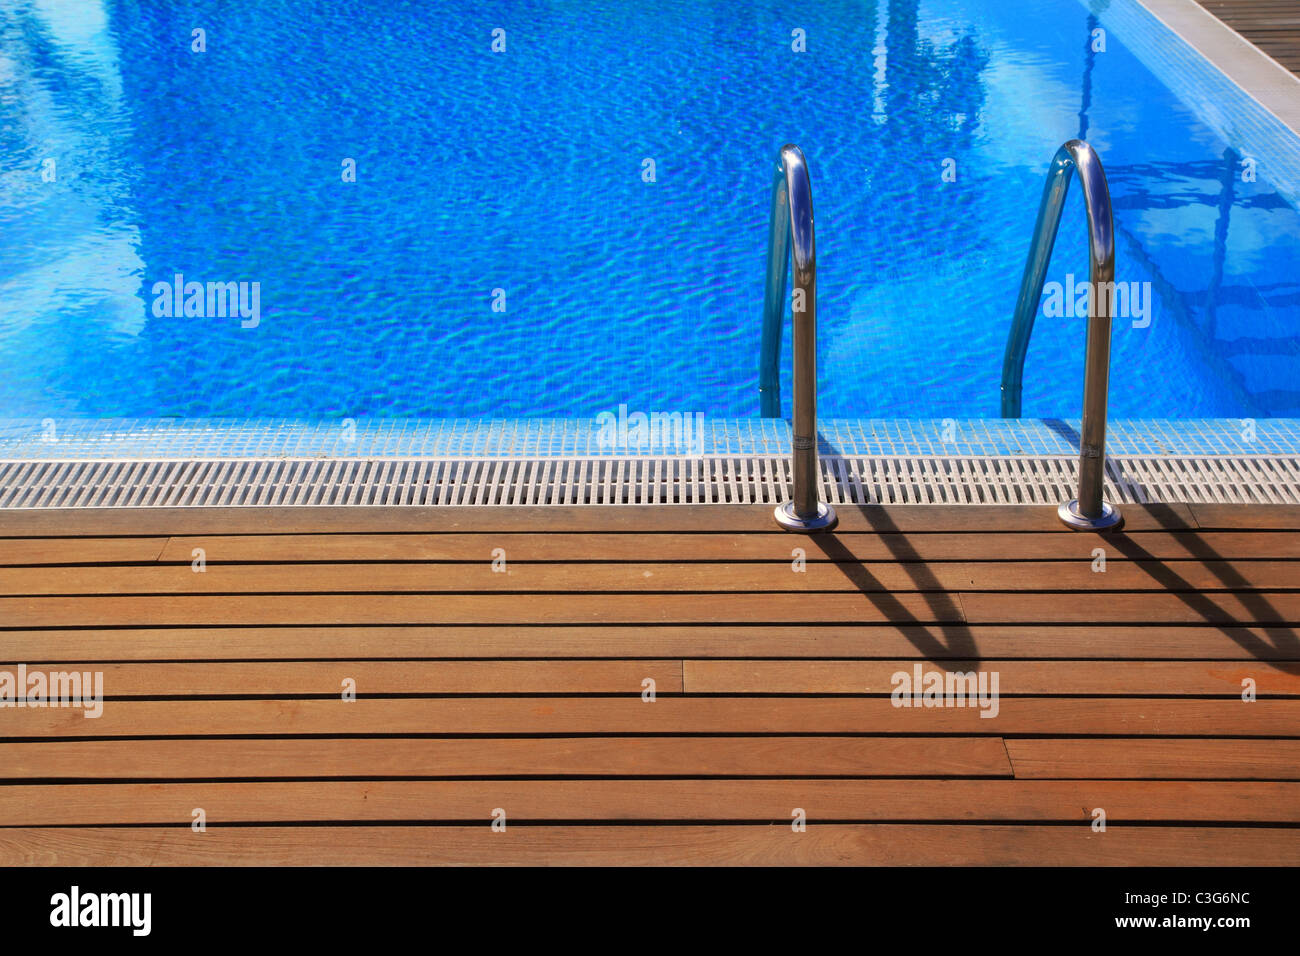 Blue piscine avec plancher en bois de teck vacances d'été à rayures Banque D'Images